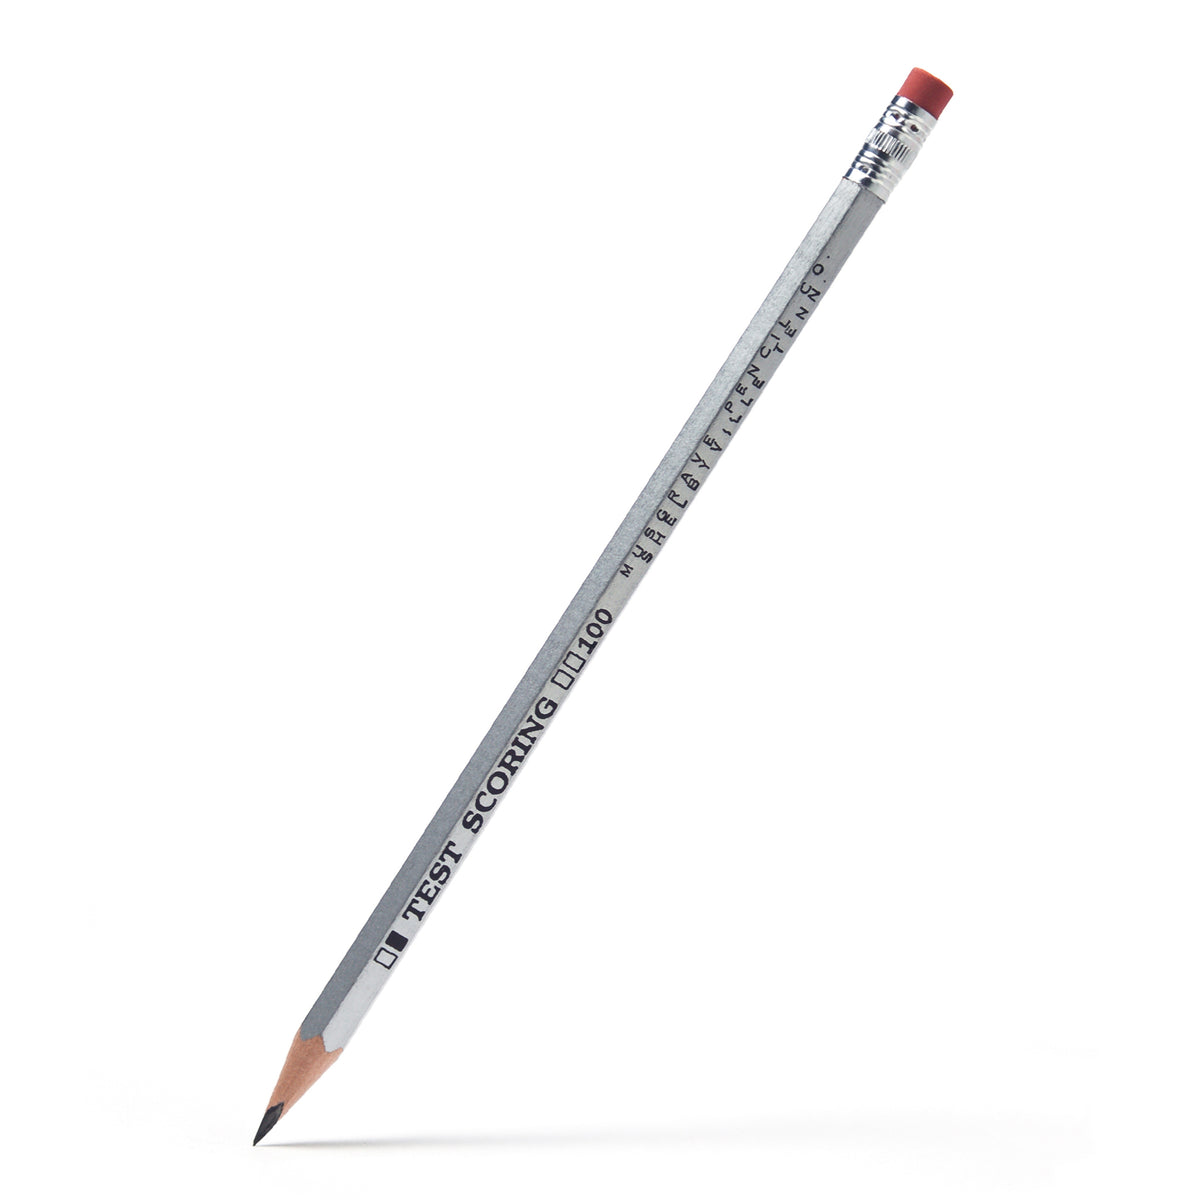 Envy – The Pencil Test